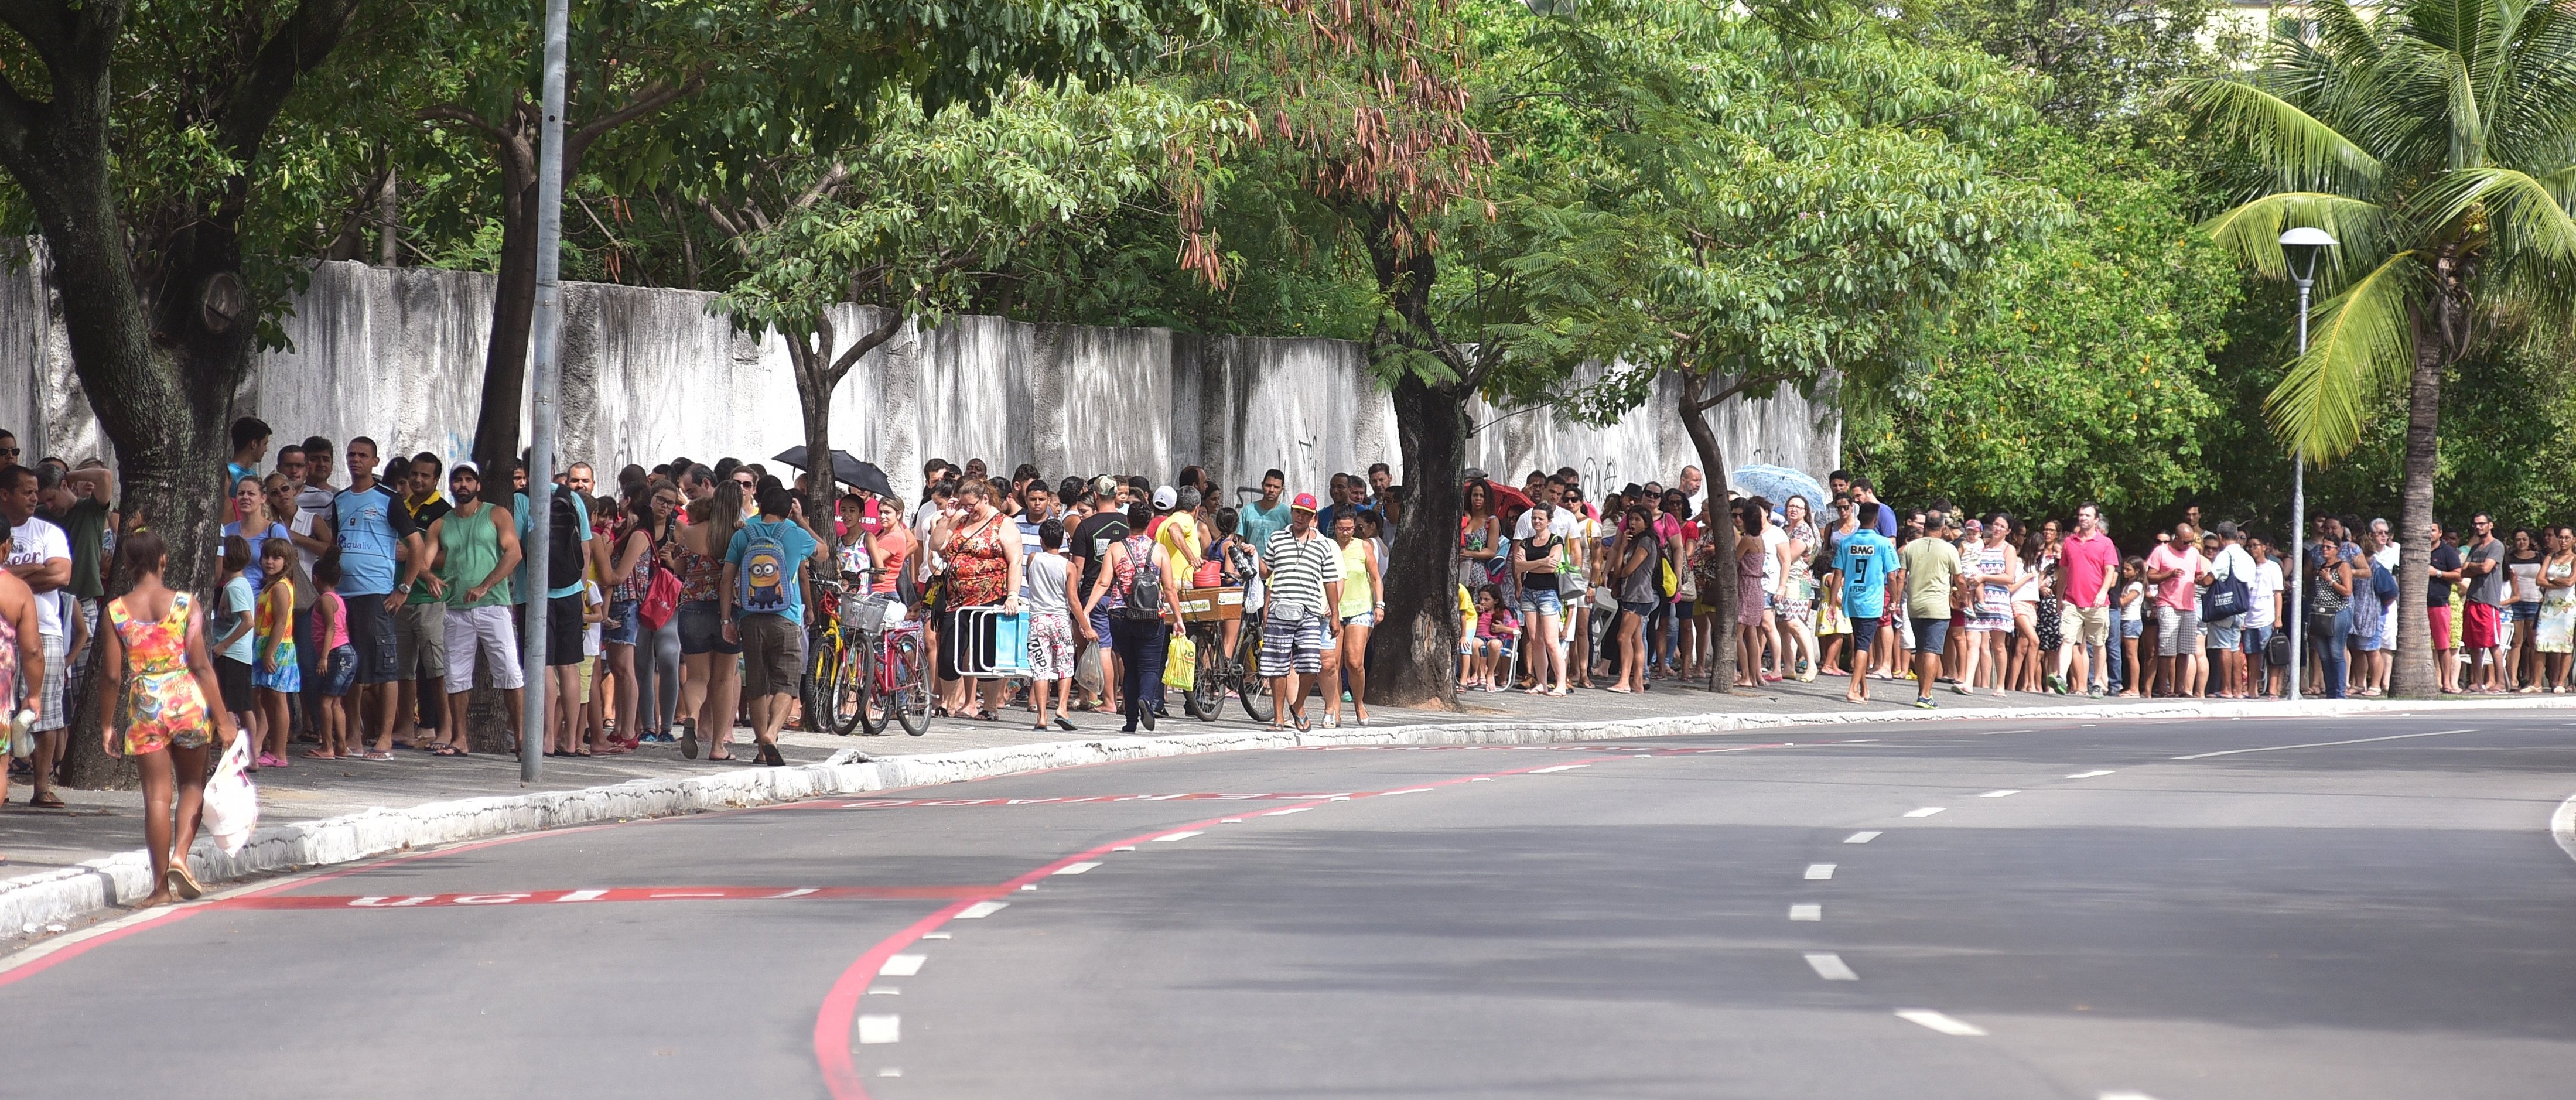 Data: 01/03/2017 - ES - Vitória - Pessoas aguardam formando longas filas para tomarem vacina contra febre amarela - Editoria: Cidades - Foto: Marcelo Prest - GZ